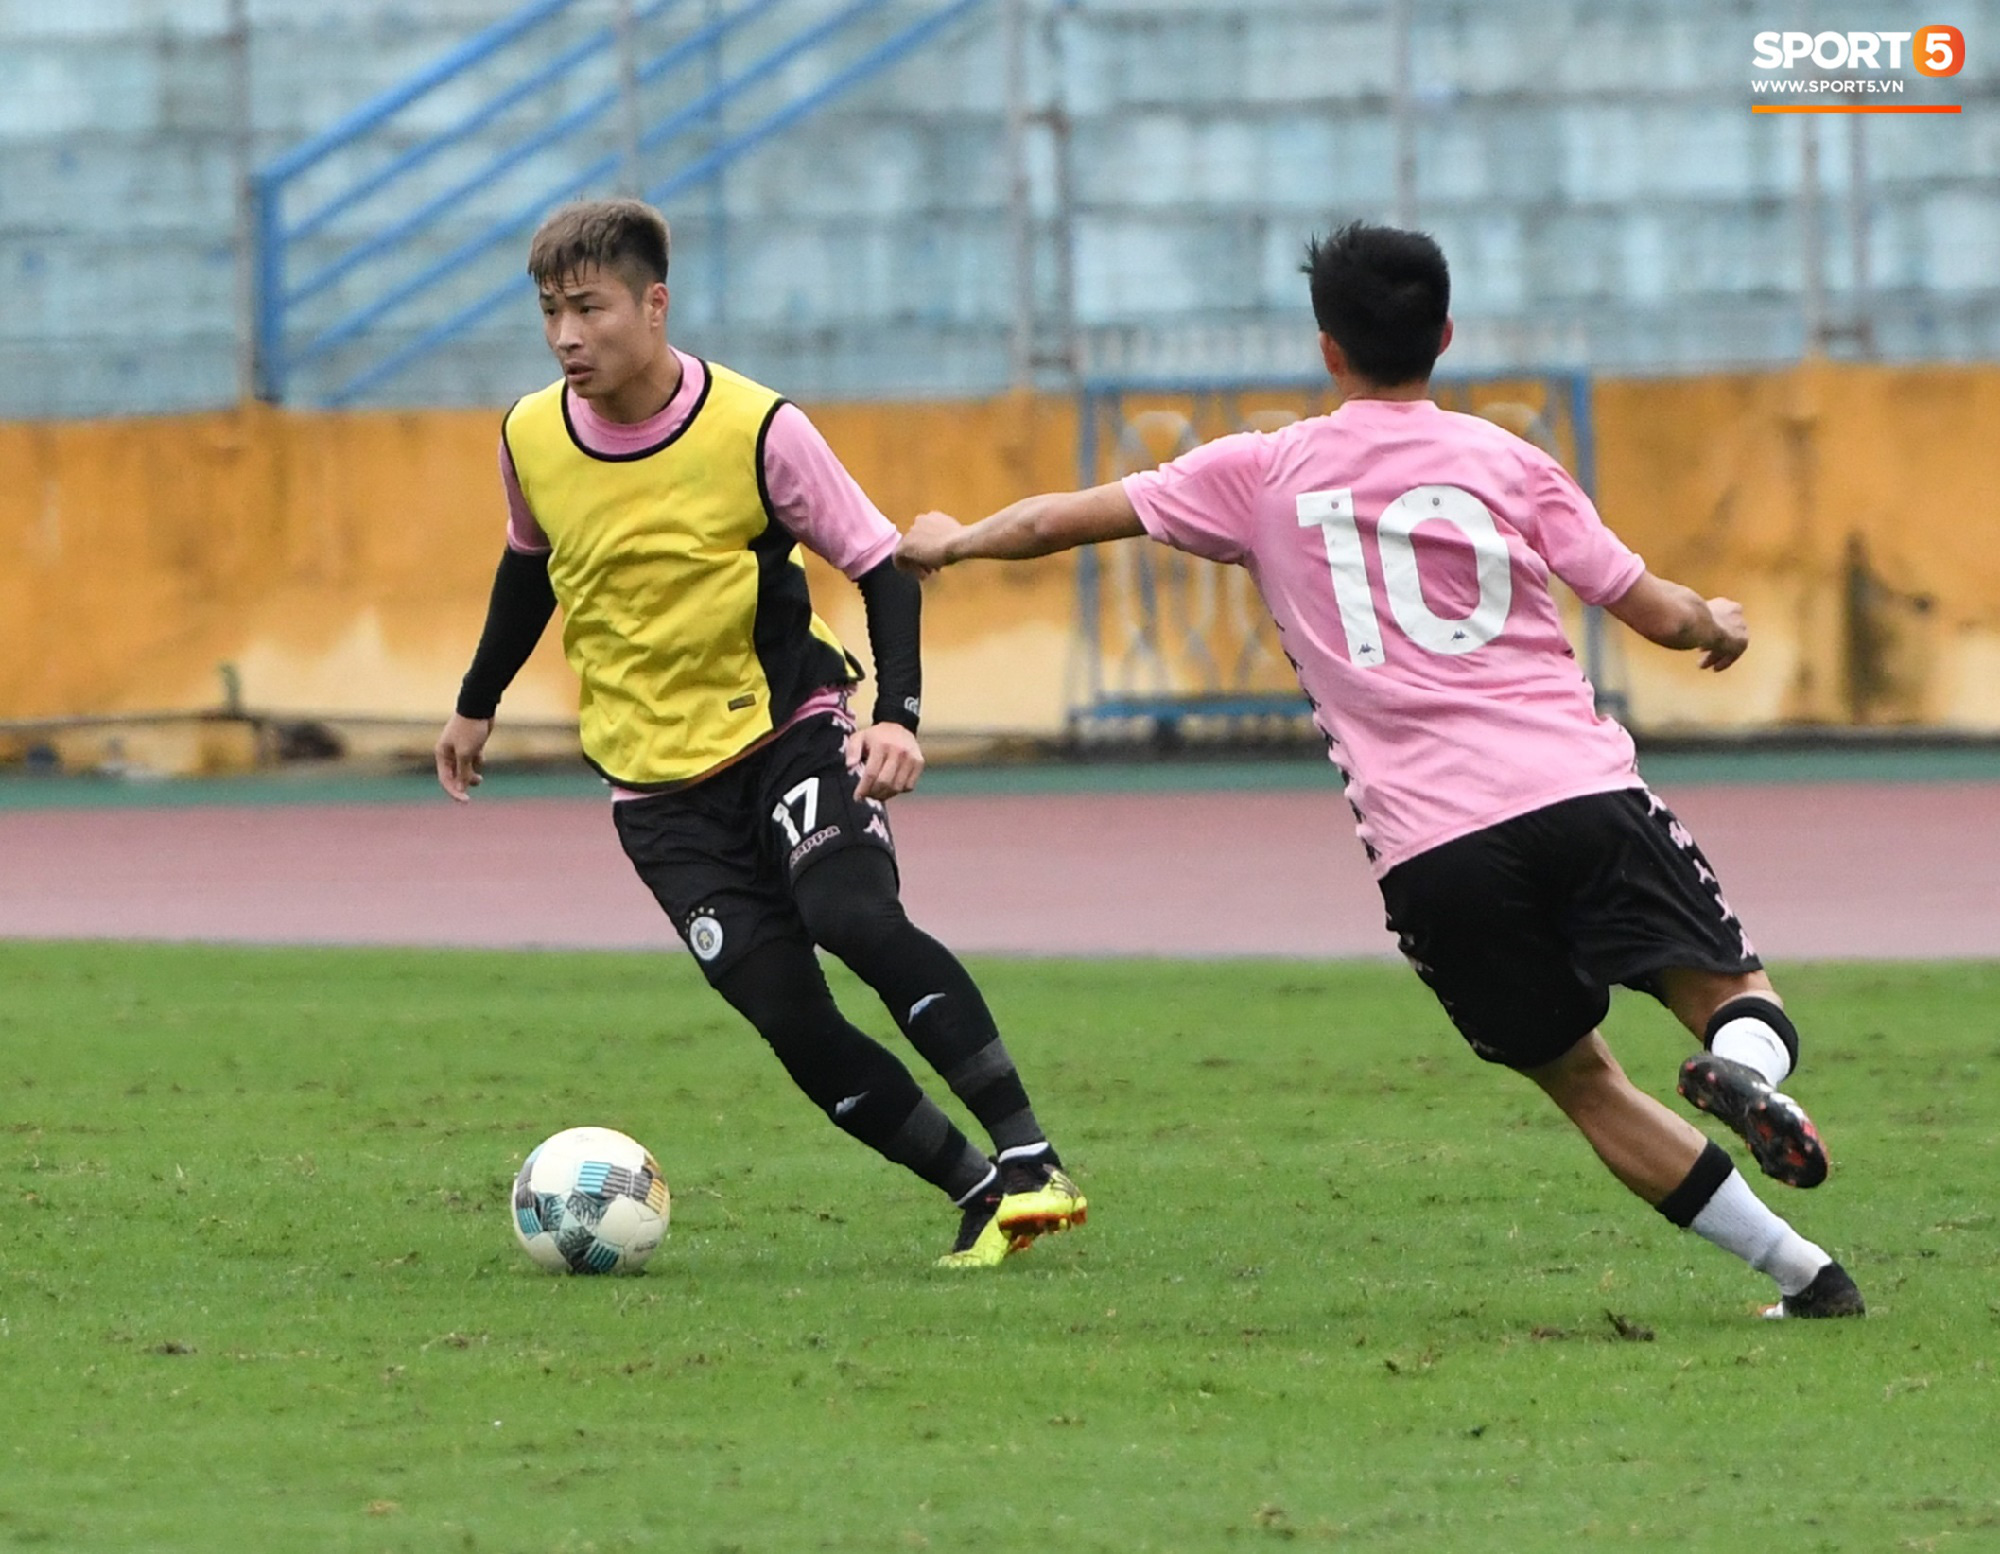 Đình Trọng đi tái khám, chắc chắn không thi đấu trận khai màn V.League 2020: CLB Hà Nội đặt niềm tin vào bộ đôi tuyển thủ U23 - Ảnh 4.